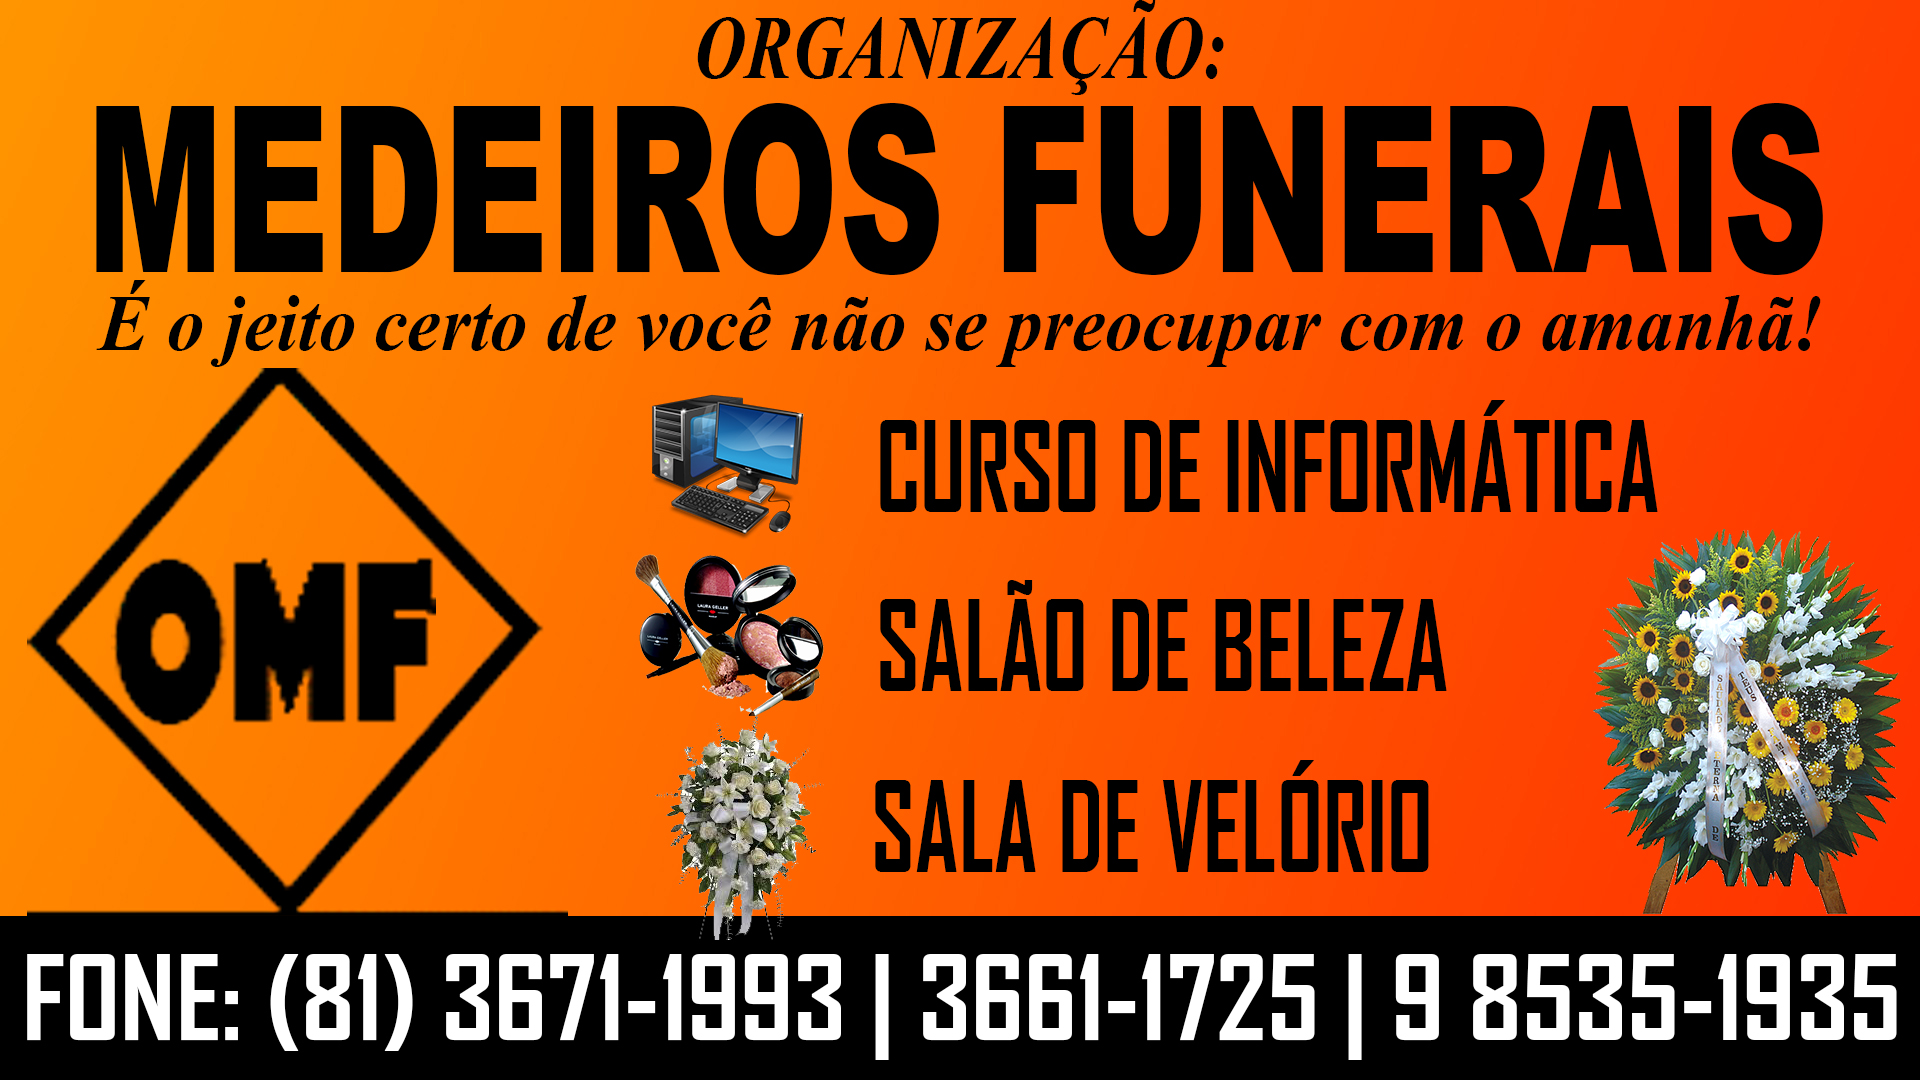 Medeiros Funerais oferece os melhores planos fúnebres da região.